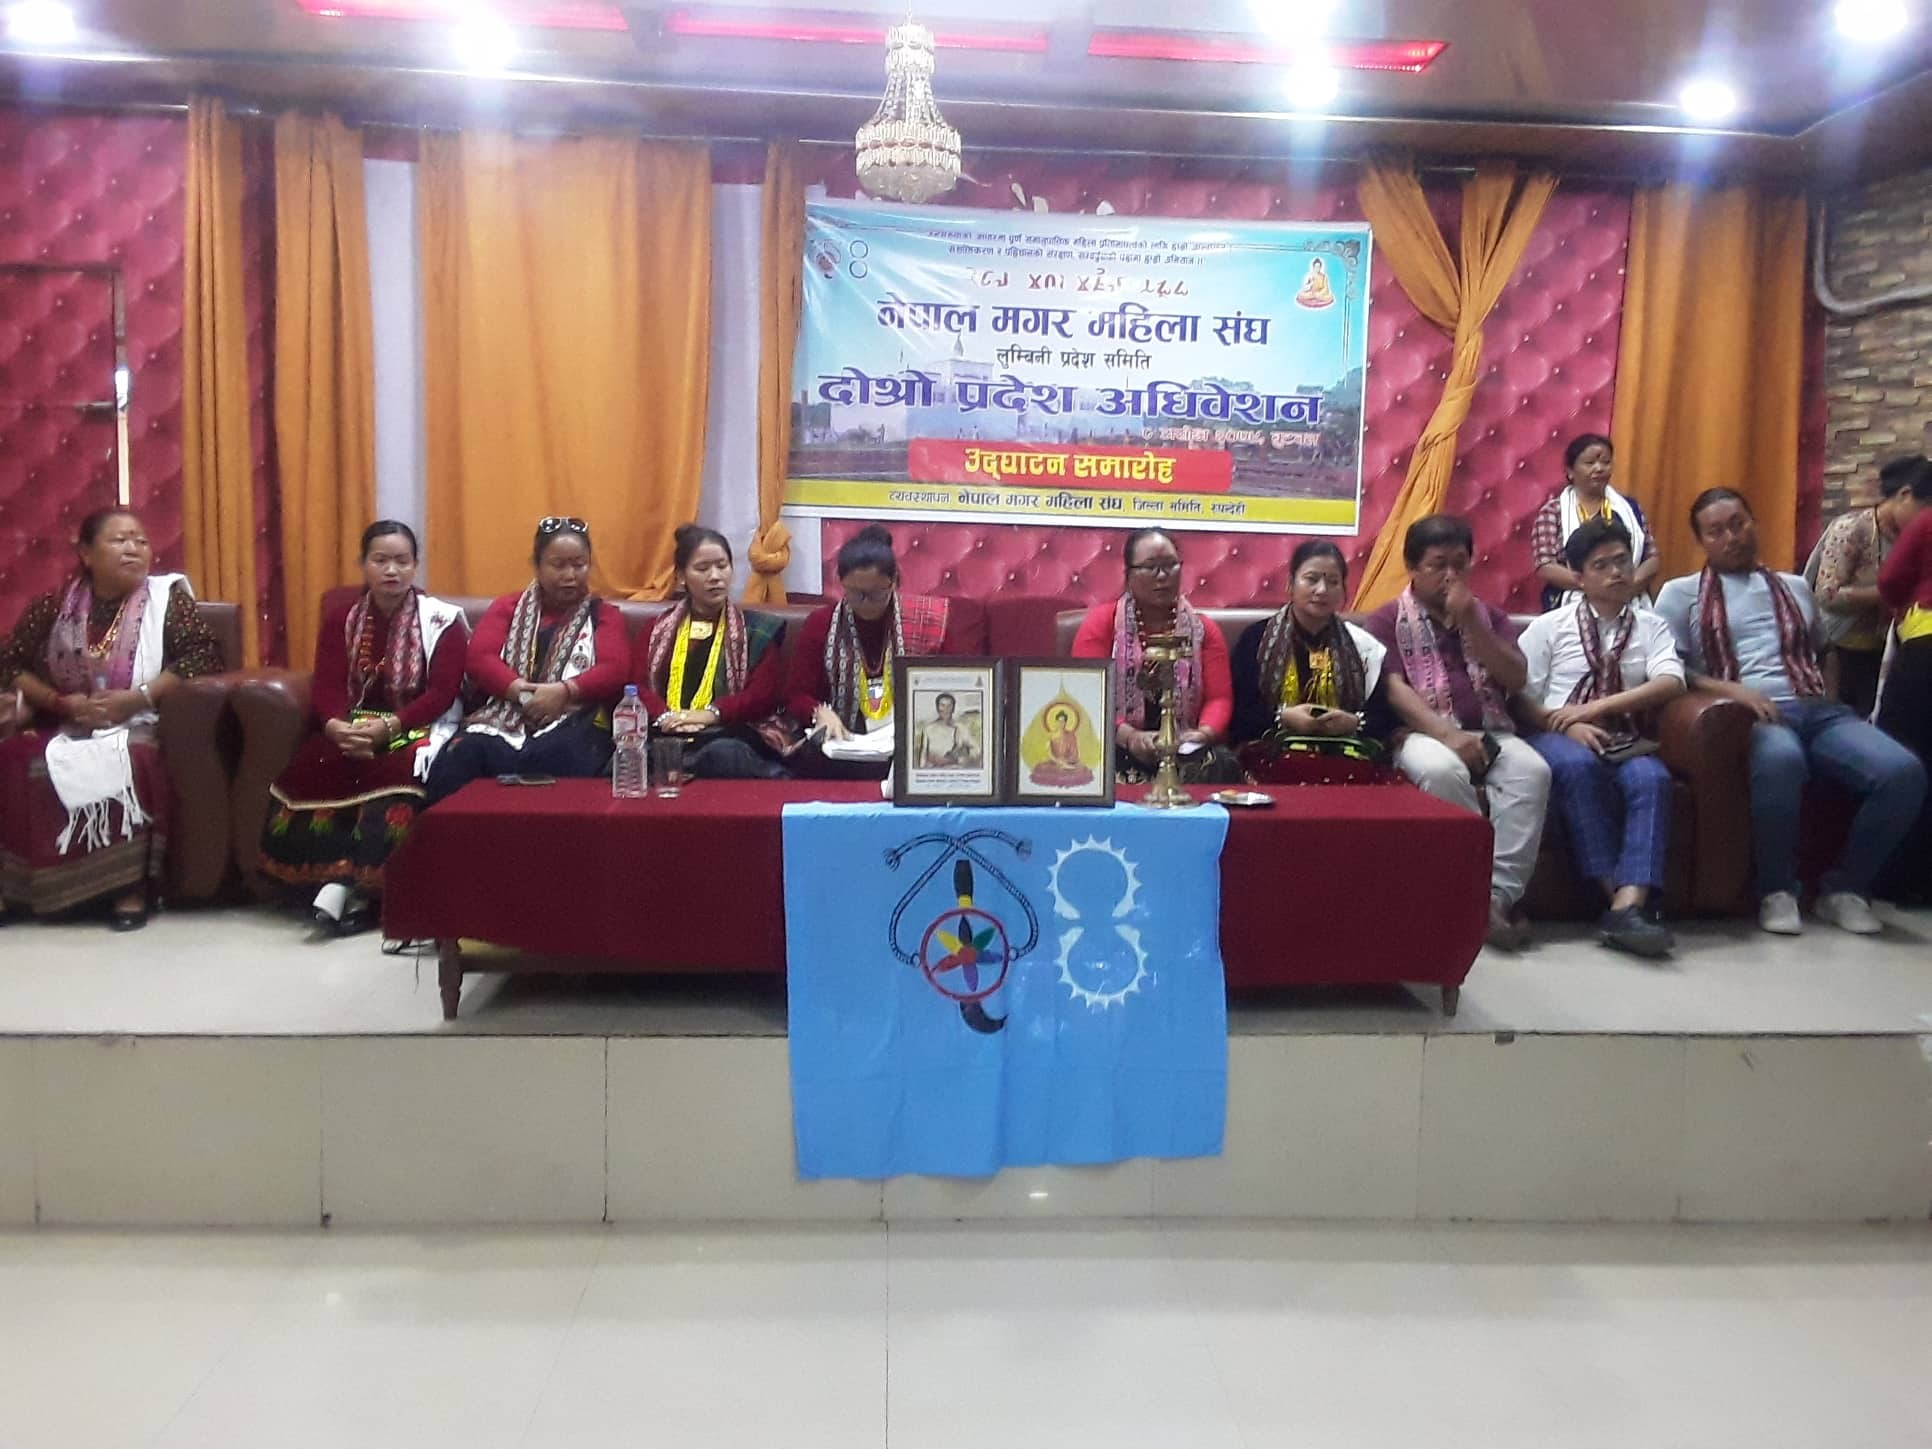 बुटवलमा नेपाल मगर महिला संघ लुम्बिनी प्रदेश समितिको दोस्रो प्रदेश अधिवेशन